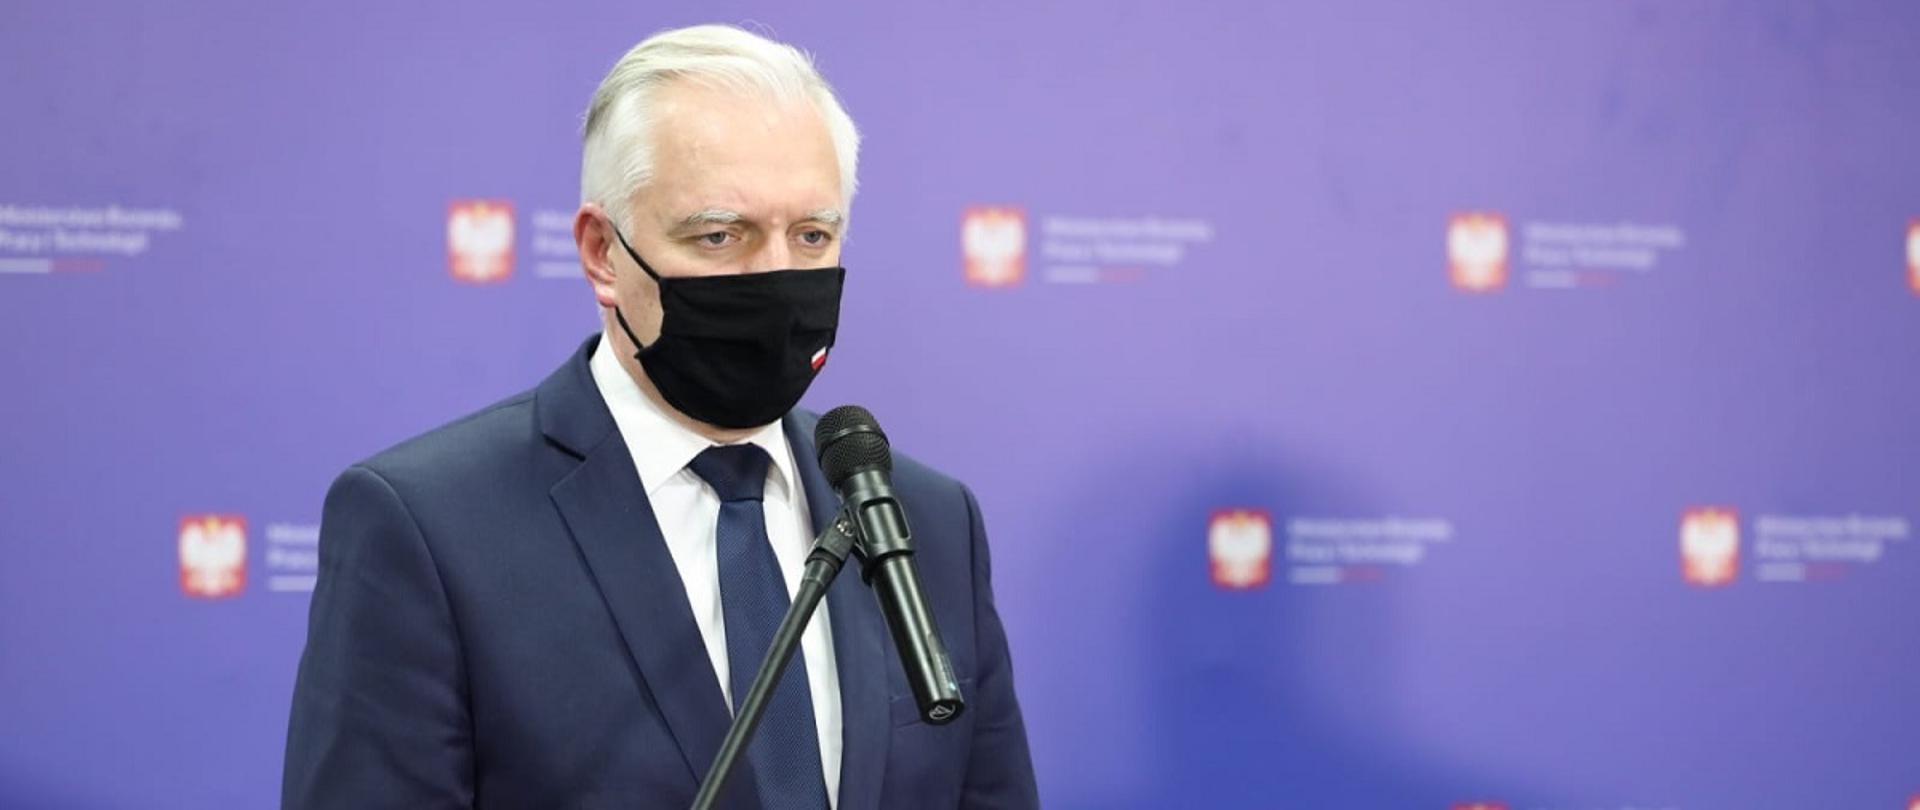 Wicepremier, minister rozwoju, pracy i technologii Jarosław Gowin stojący w maseczce na twarzy przy pulpicie